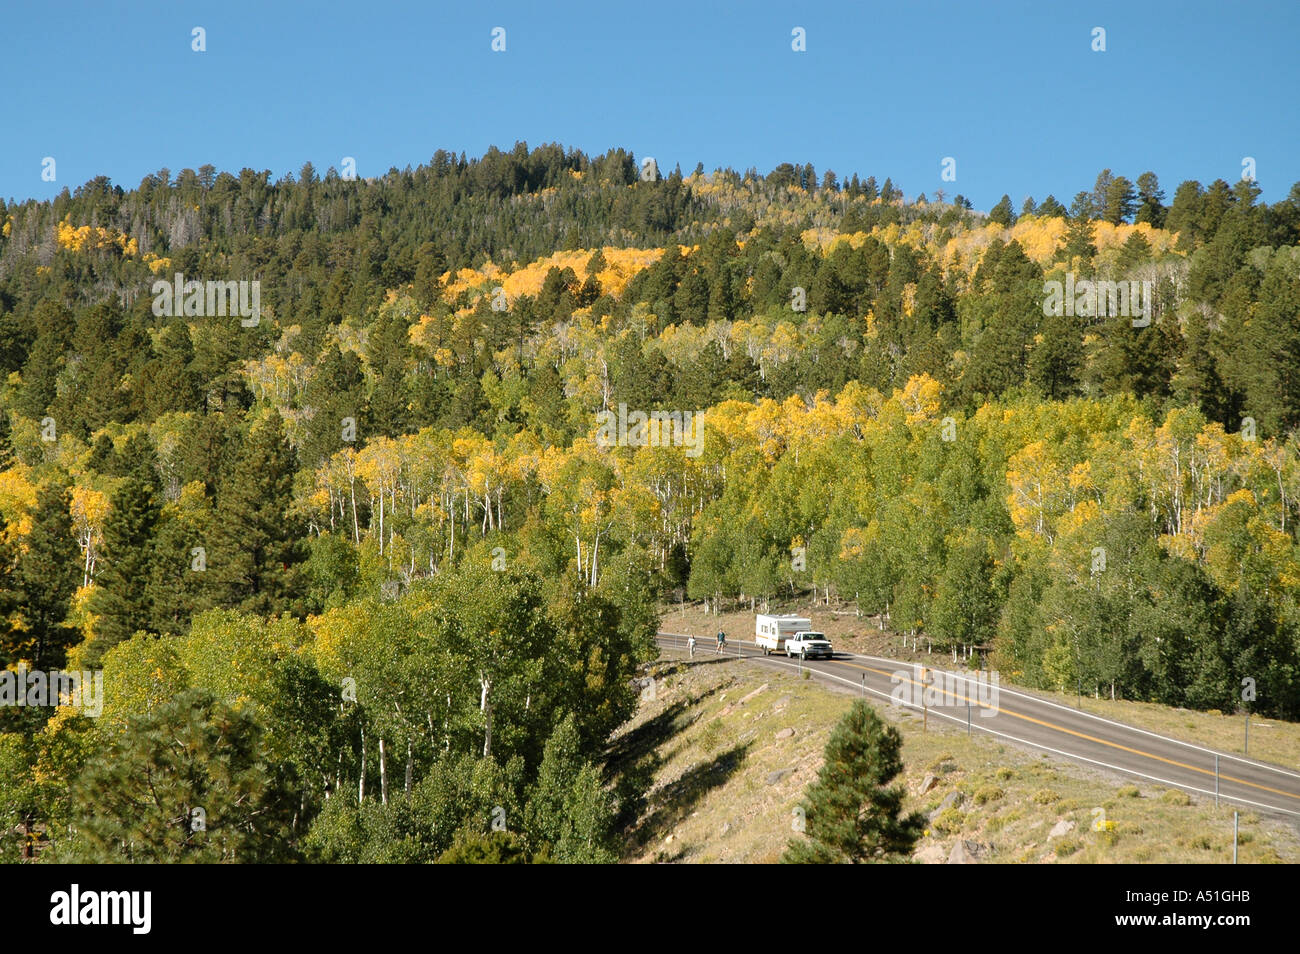 Utah Herbst verfärben gelbe Blätter camping Anhänger RV kurvenreiche Straße in Waldwildnis Stockfoto